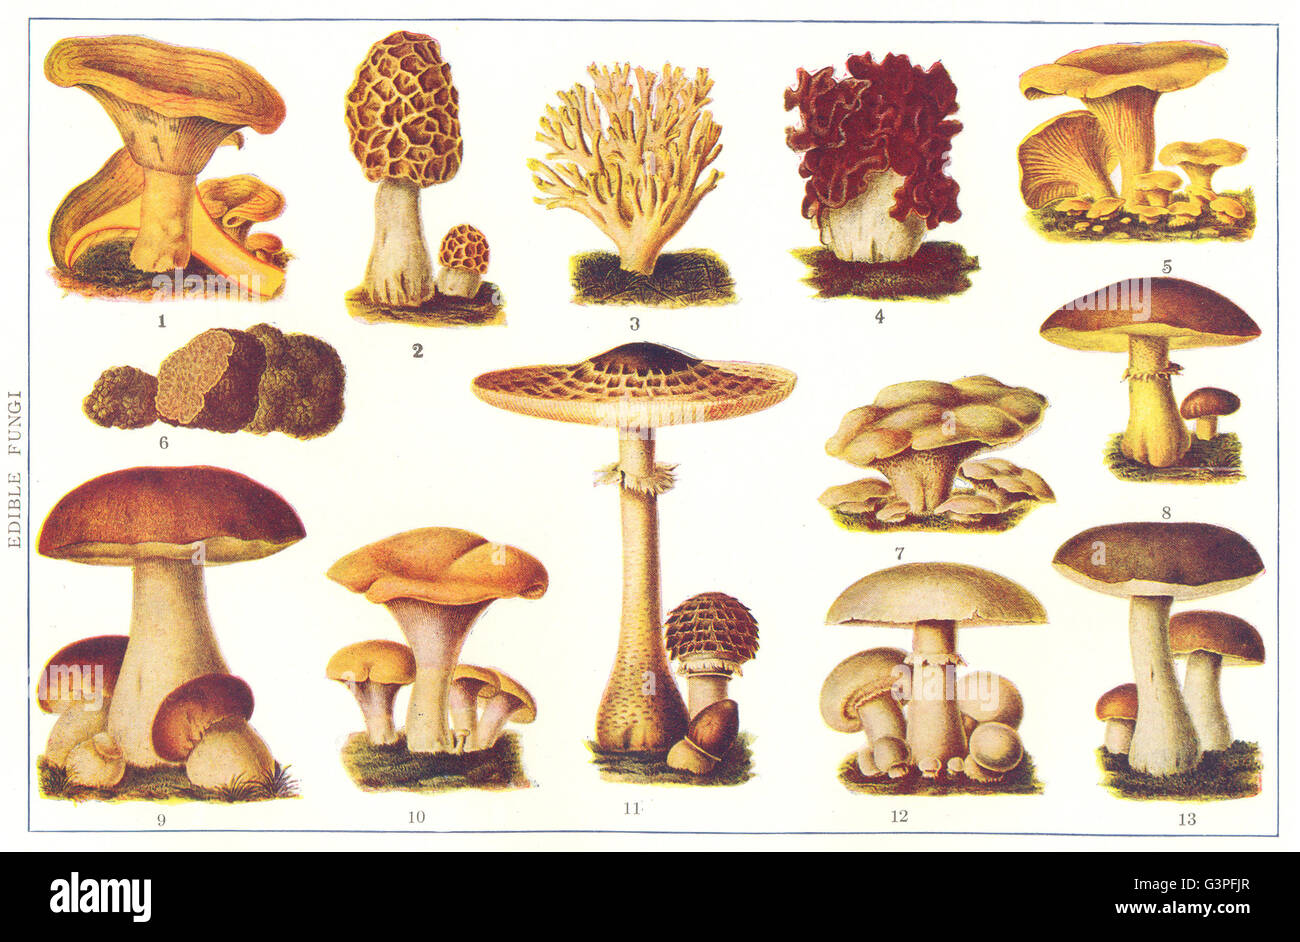 Funghi commestibili: gustosa; Morchelle; cresta di gallo; Toadstool;  Cantarelle; Tartufo, 1907 Foto stock - Alamy